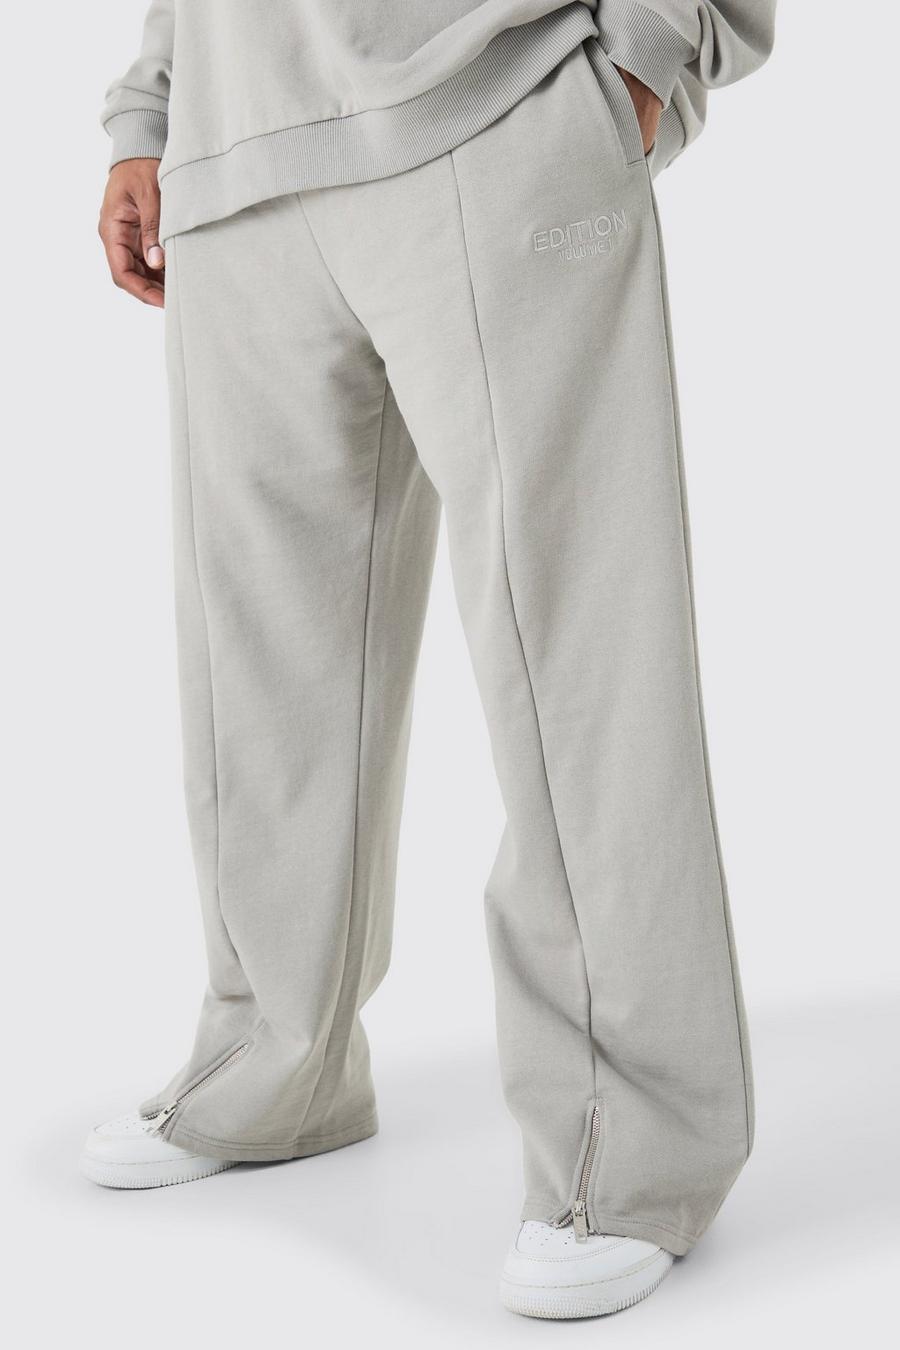 Pantaloni tuta pesanti Plus Size EDITION rilassati con spacco sul fondo, Grey image number 1